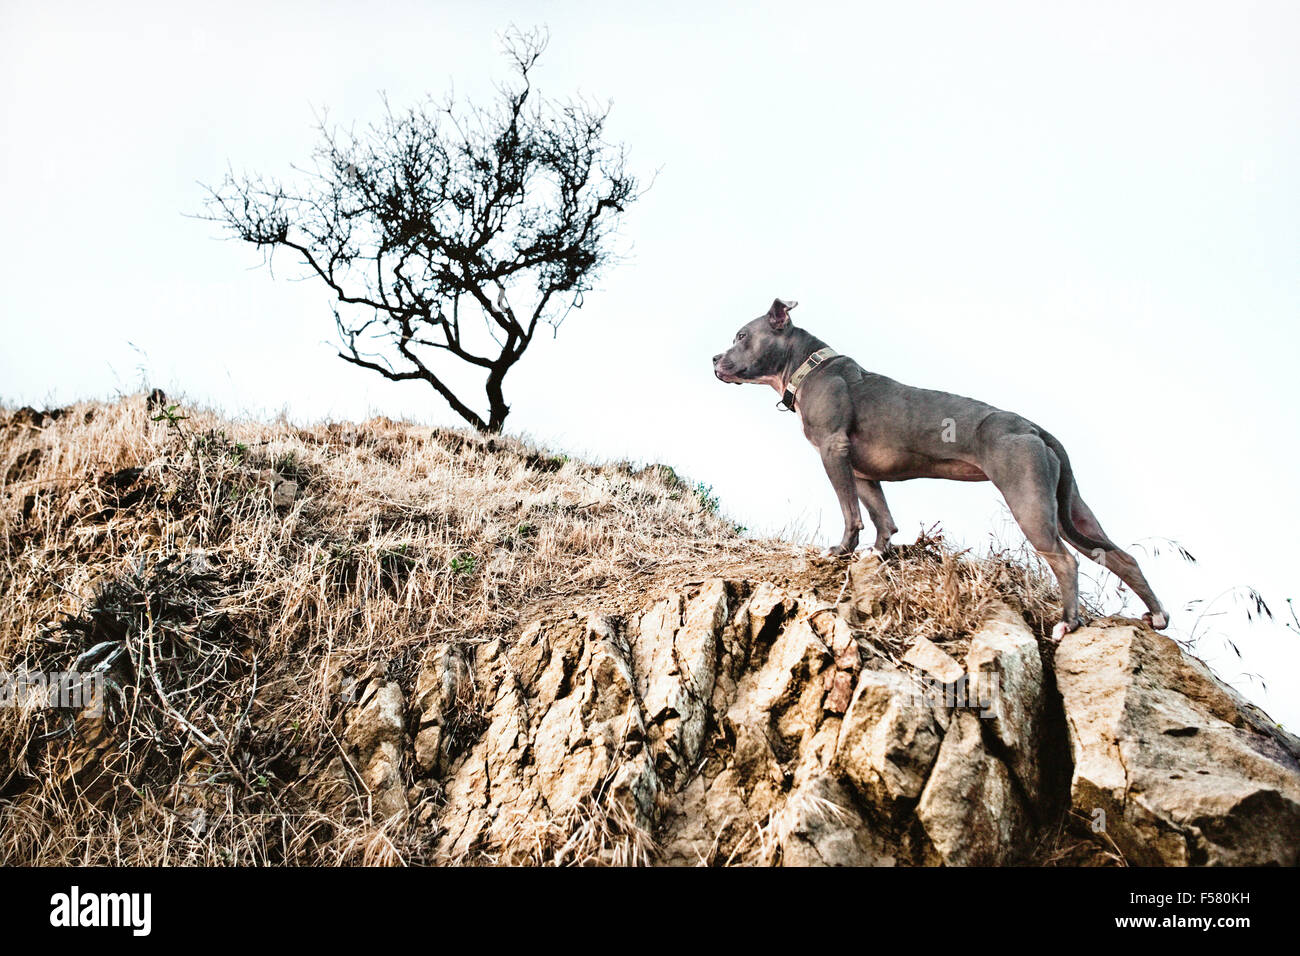 Eroica la postura di un cane di arrampicata a secco di un colle roccioso con un lone tree sterile in background Foto Stock